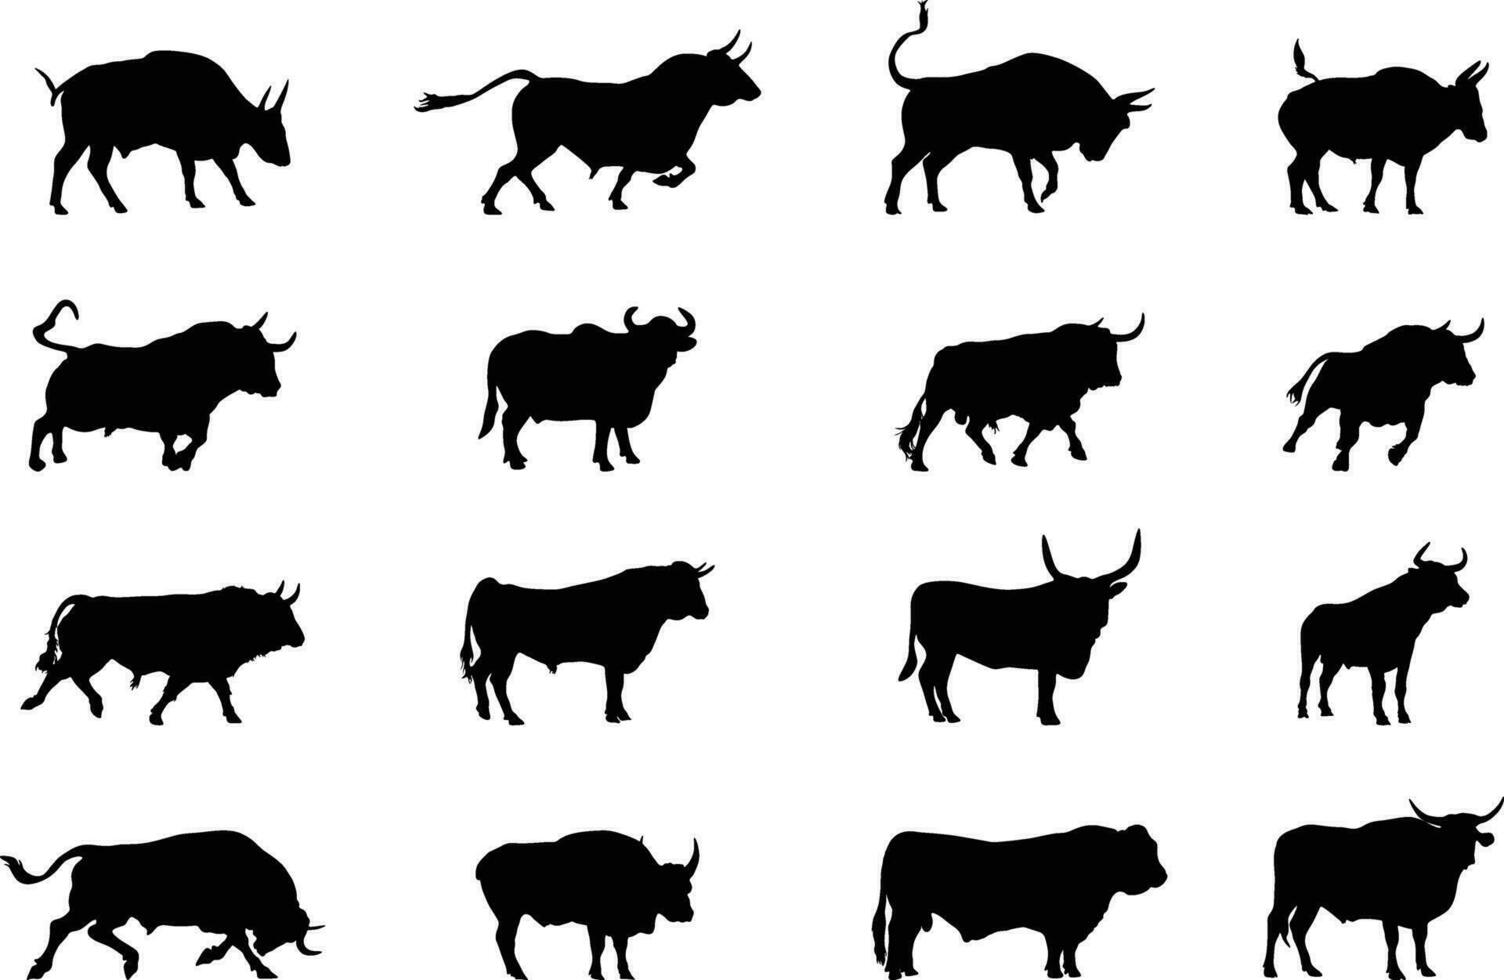 Bull silhouettes, Bull silhouette,  Bull vector illustration